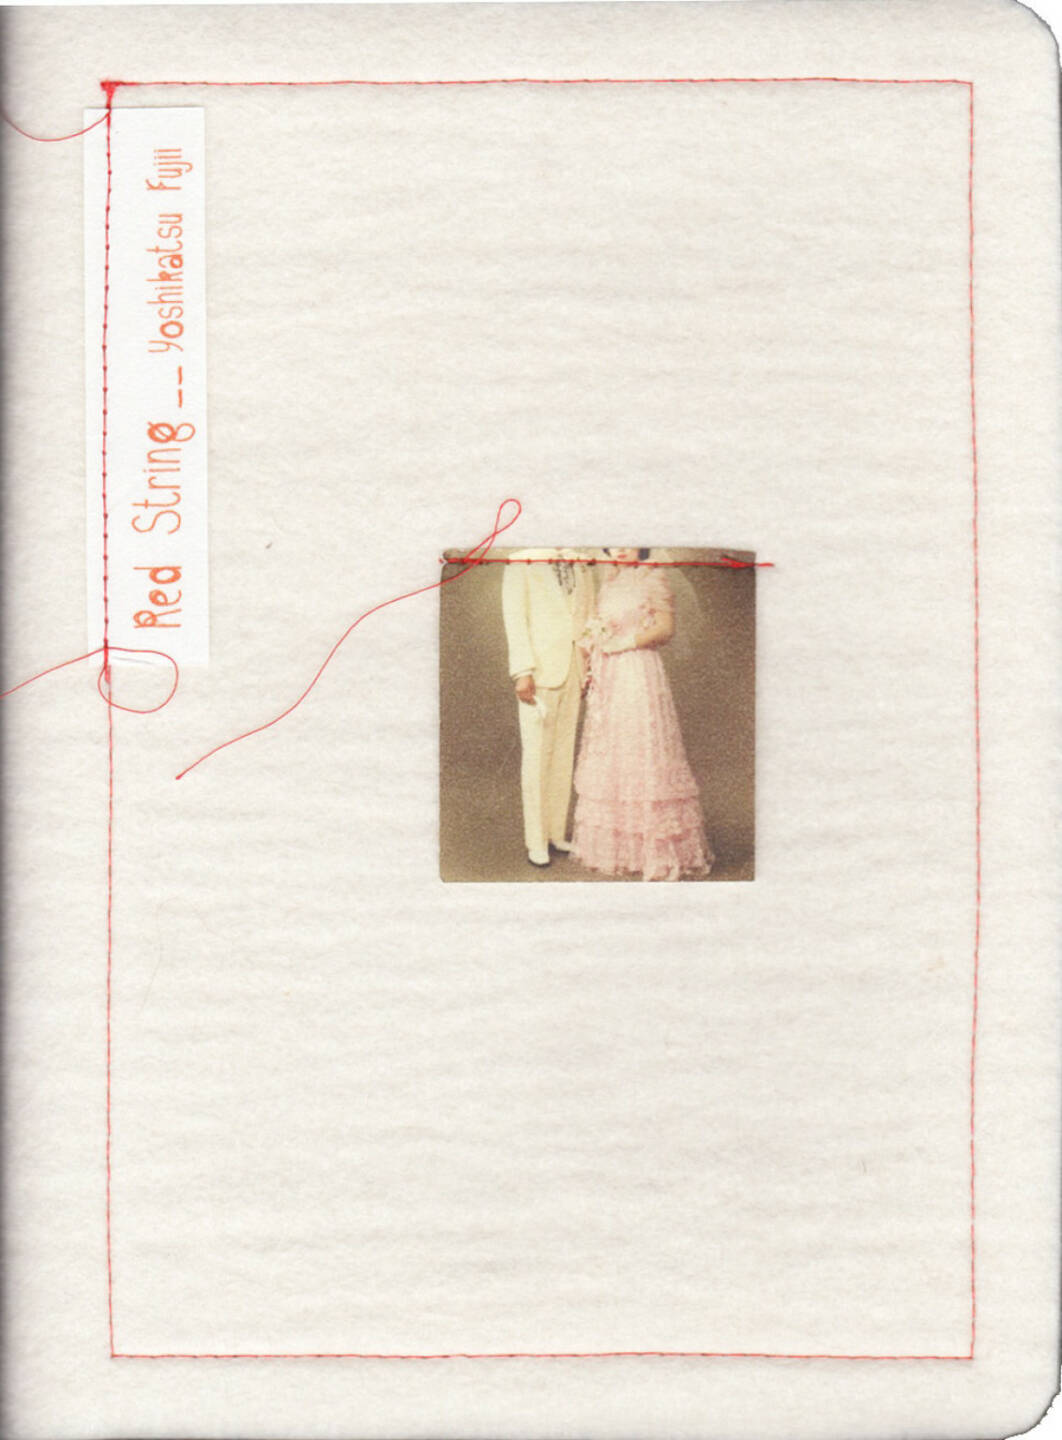 Yoshikatsu Fujii - Red String (2014), (200-) 1500 Euro, http://josefchladek.com/book/yoshikatsu_fujii_-_red_string